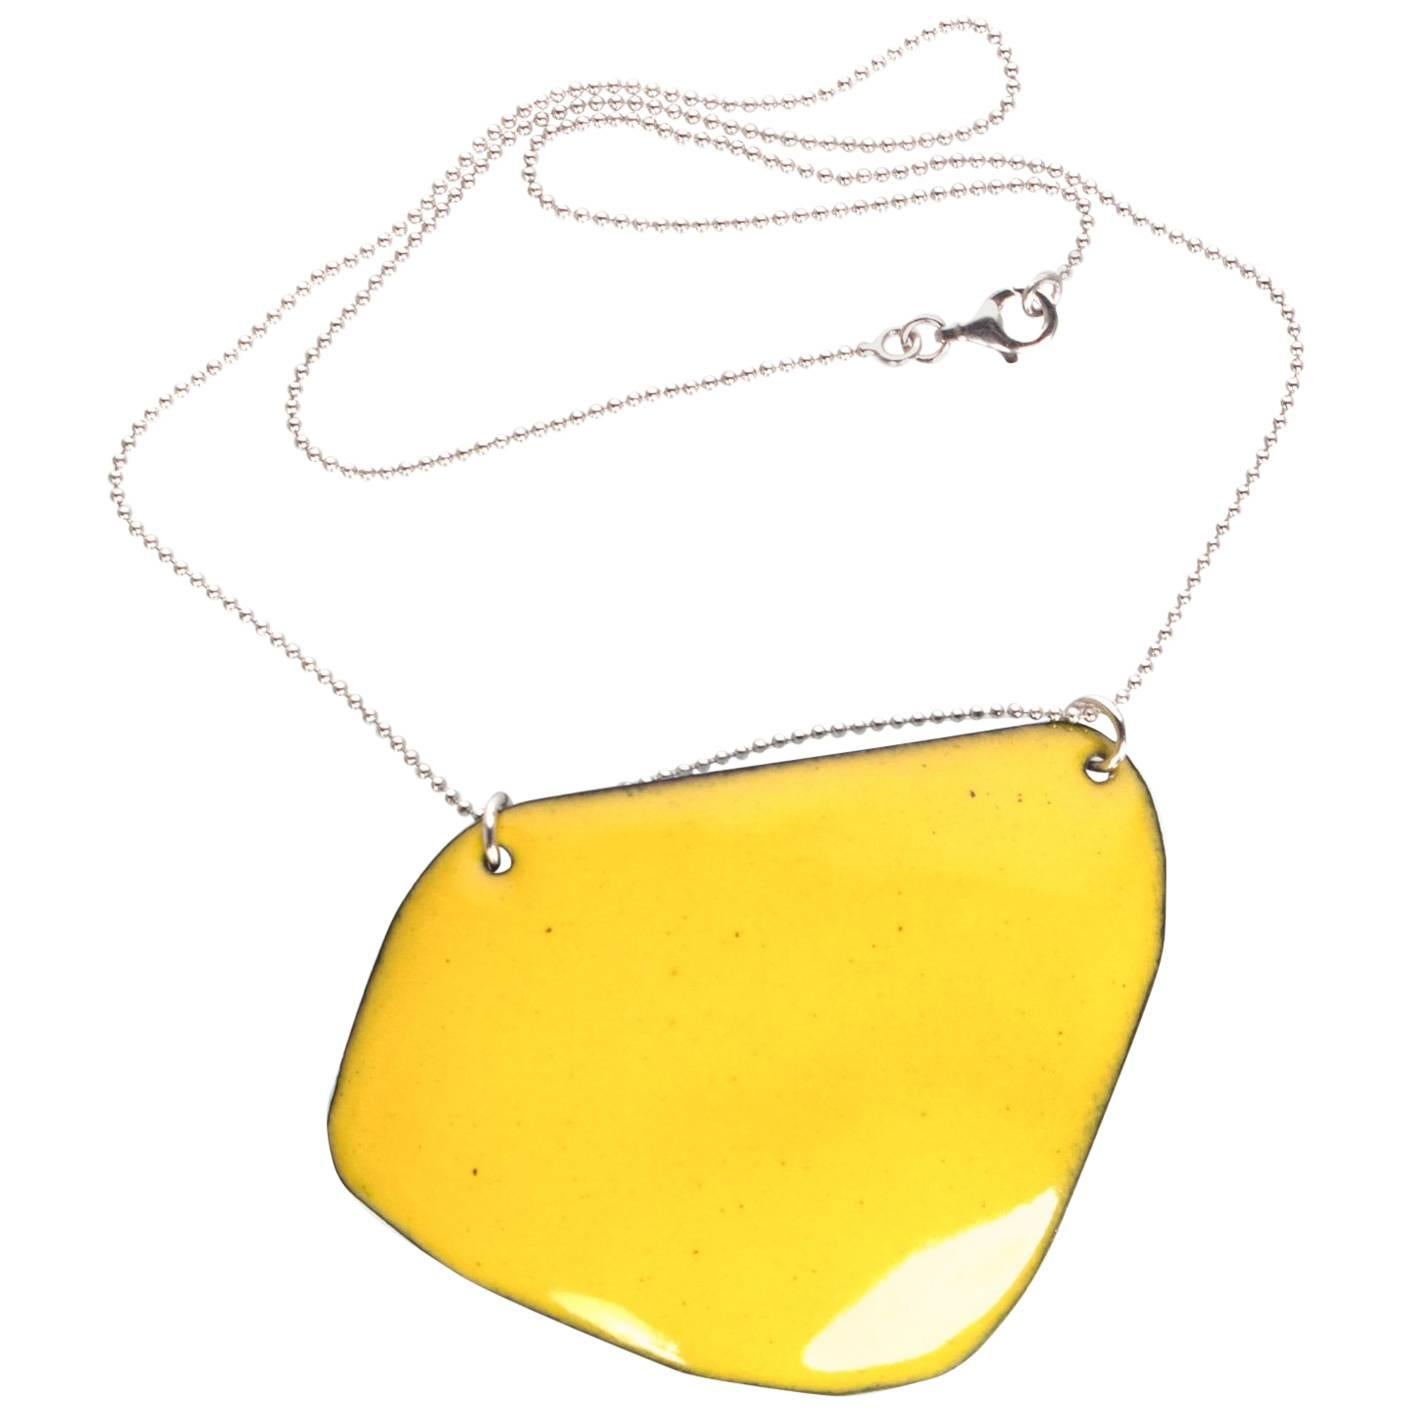 Michel McNabb for Basha, collier à pendentif en argent avec pendentif en or, émail et limoncello